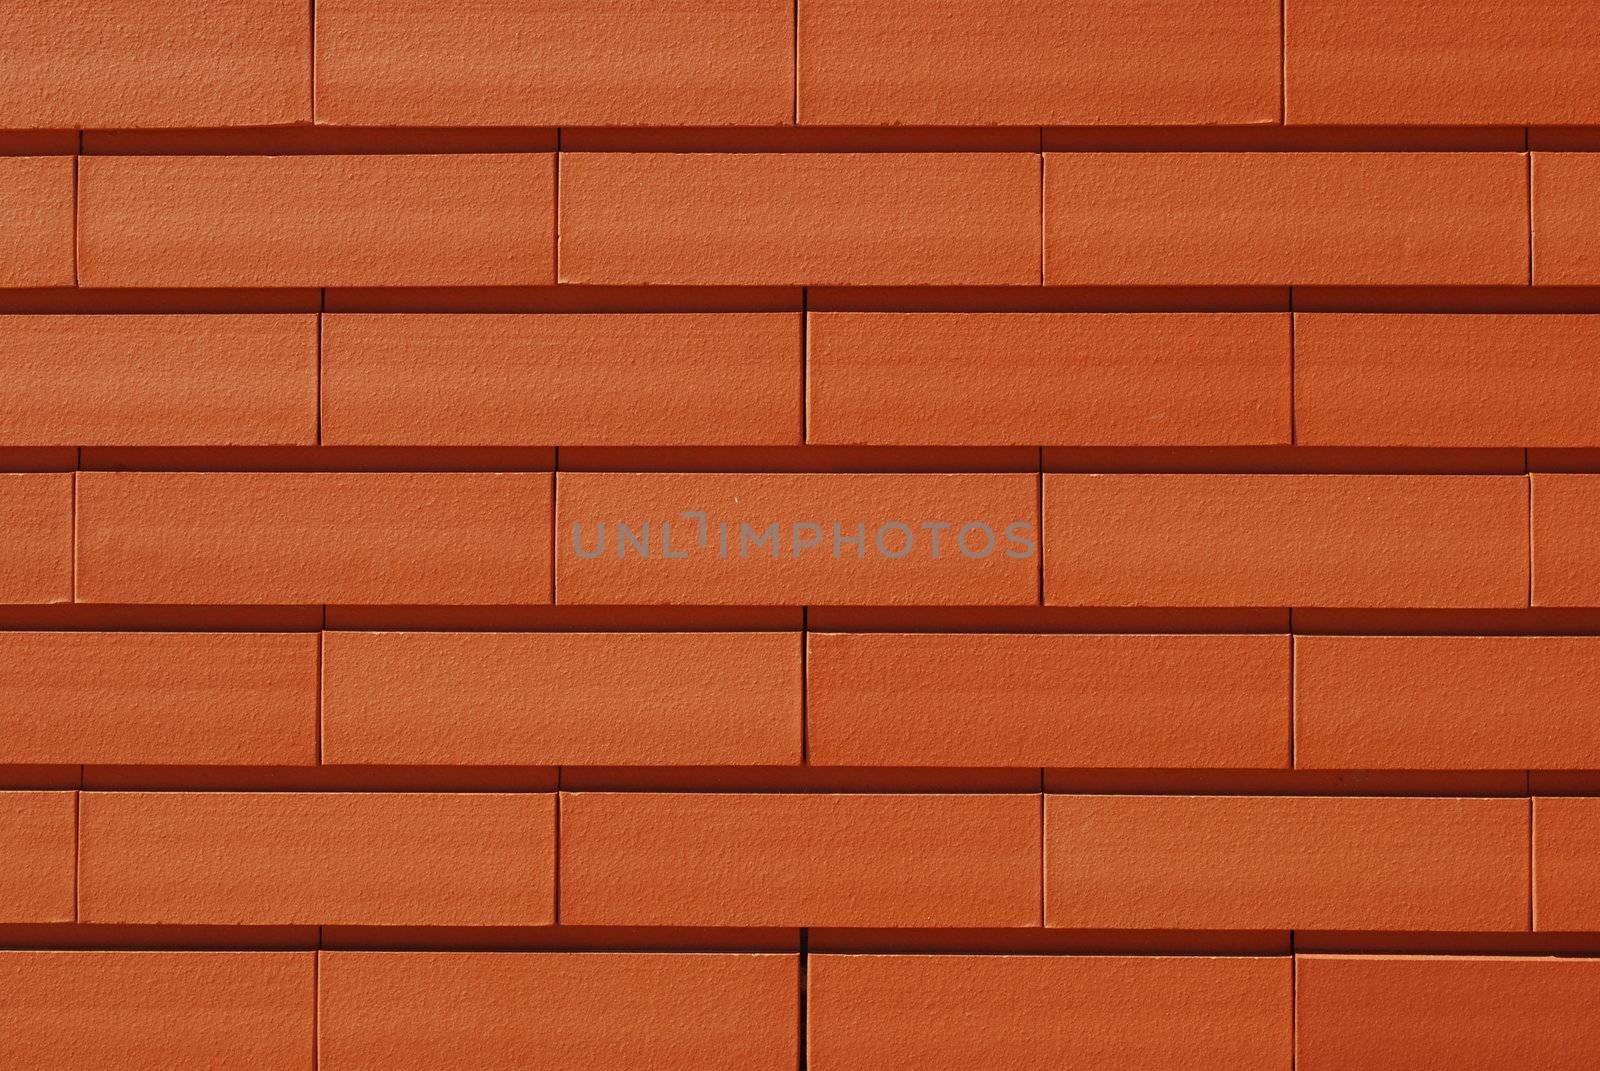 Beautiful orange brick wall background